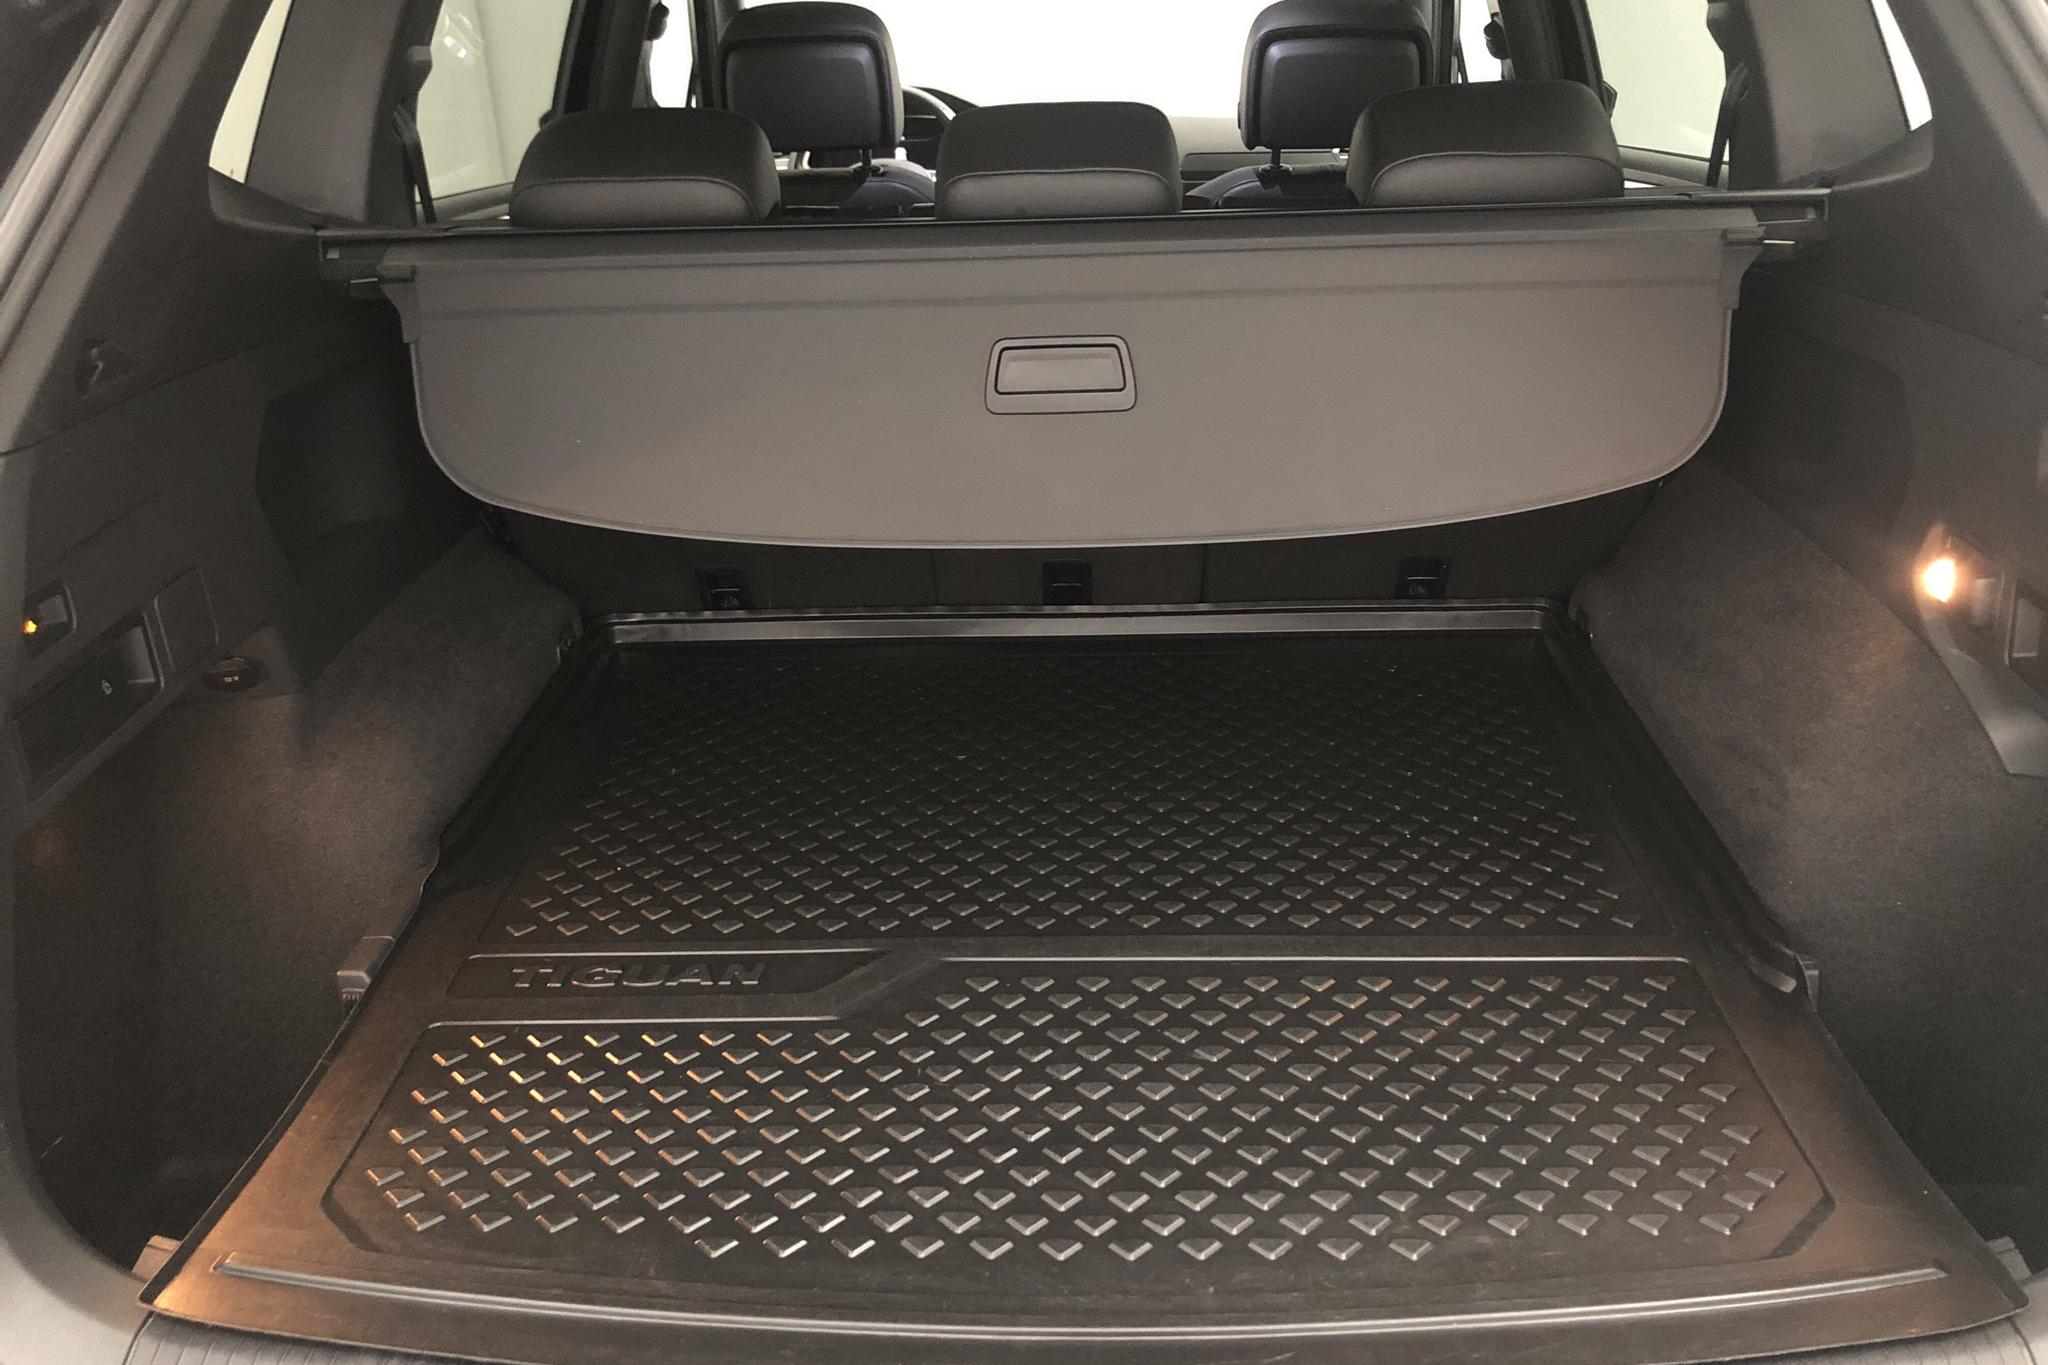 VW Tiguan Allspace 2.0 TDI 4MOTION (190hk) - 79 010 km - Automatic - black - 2018